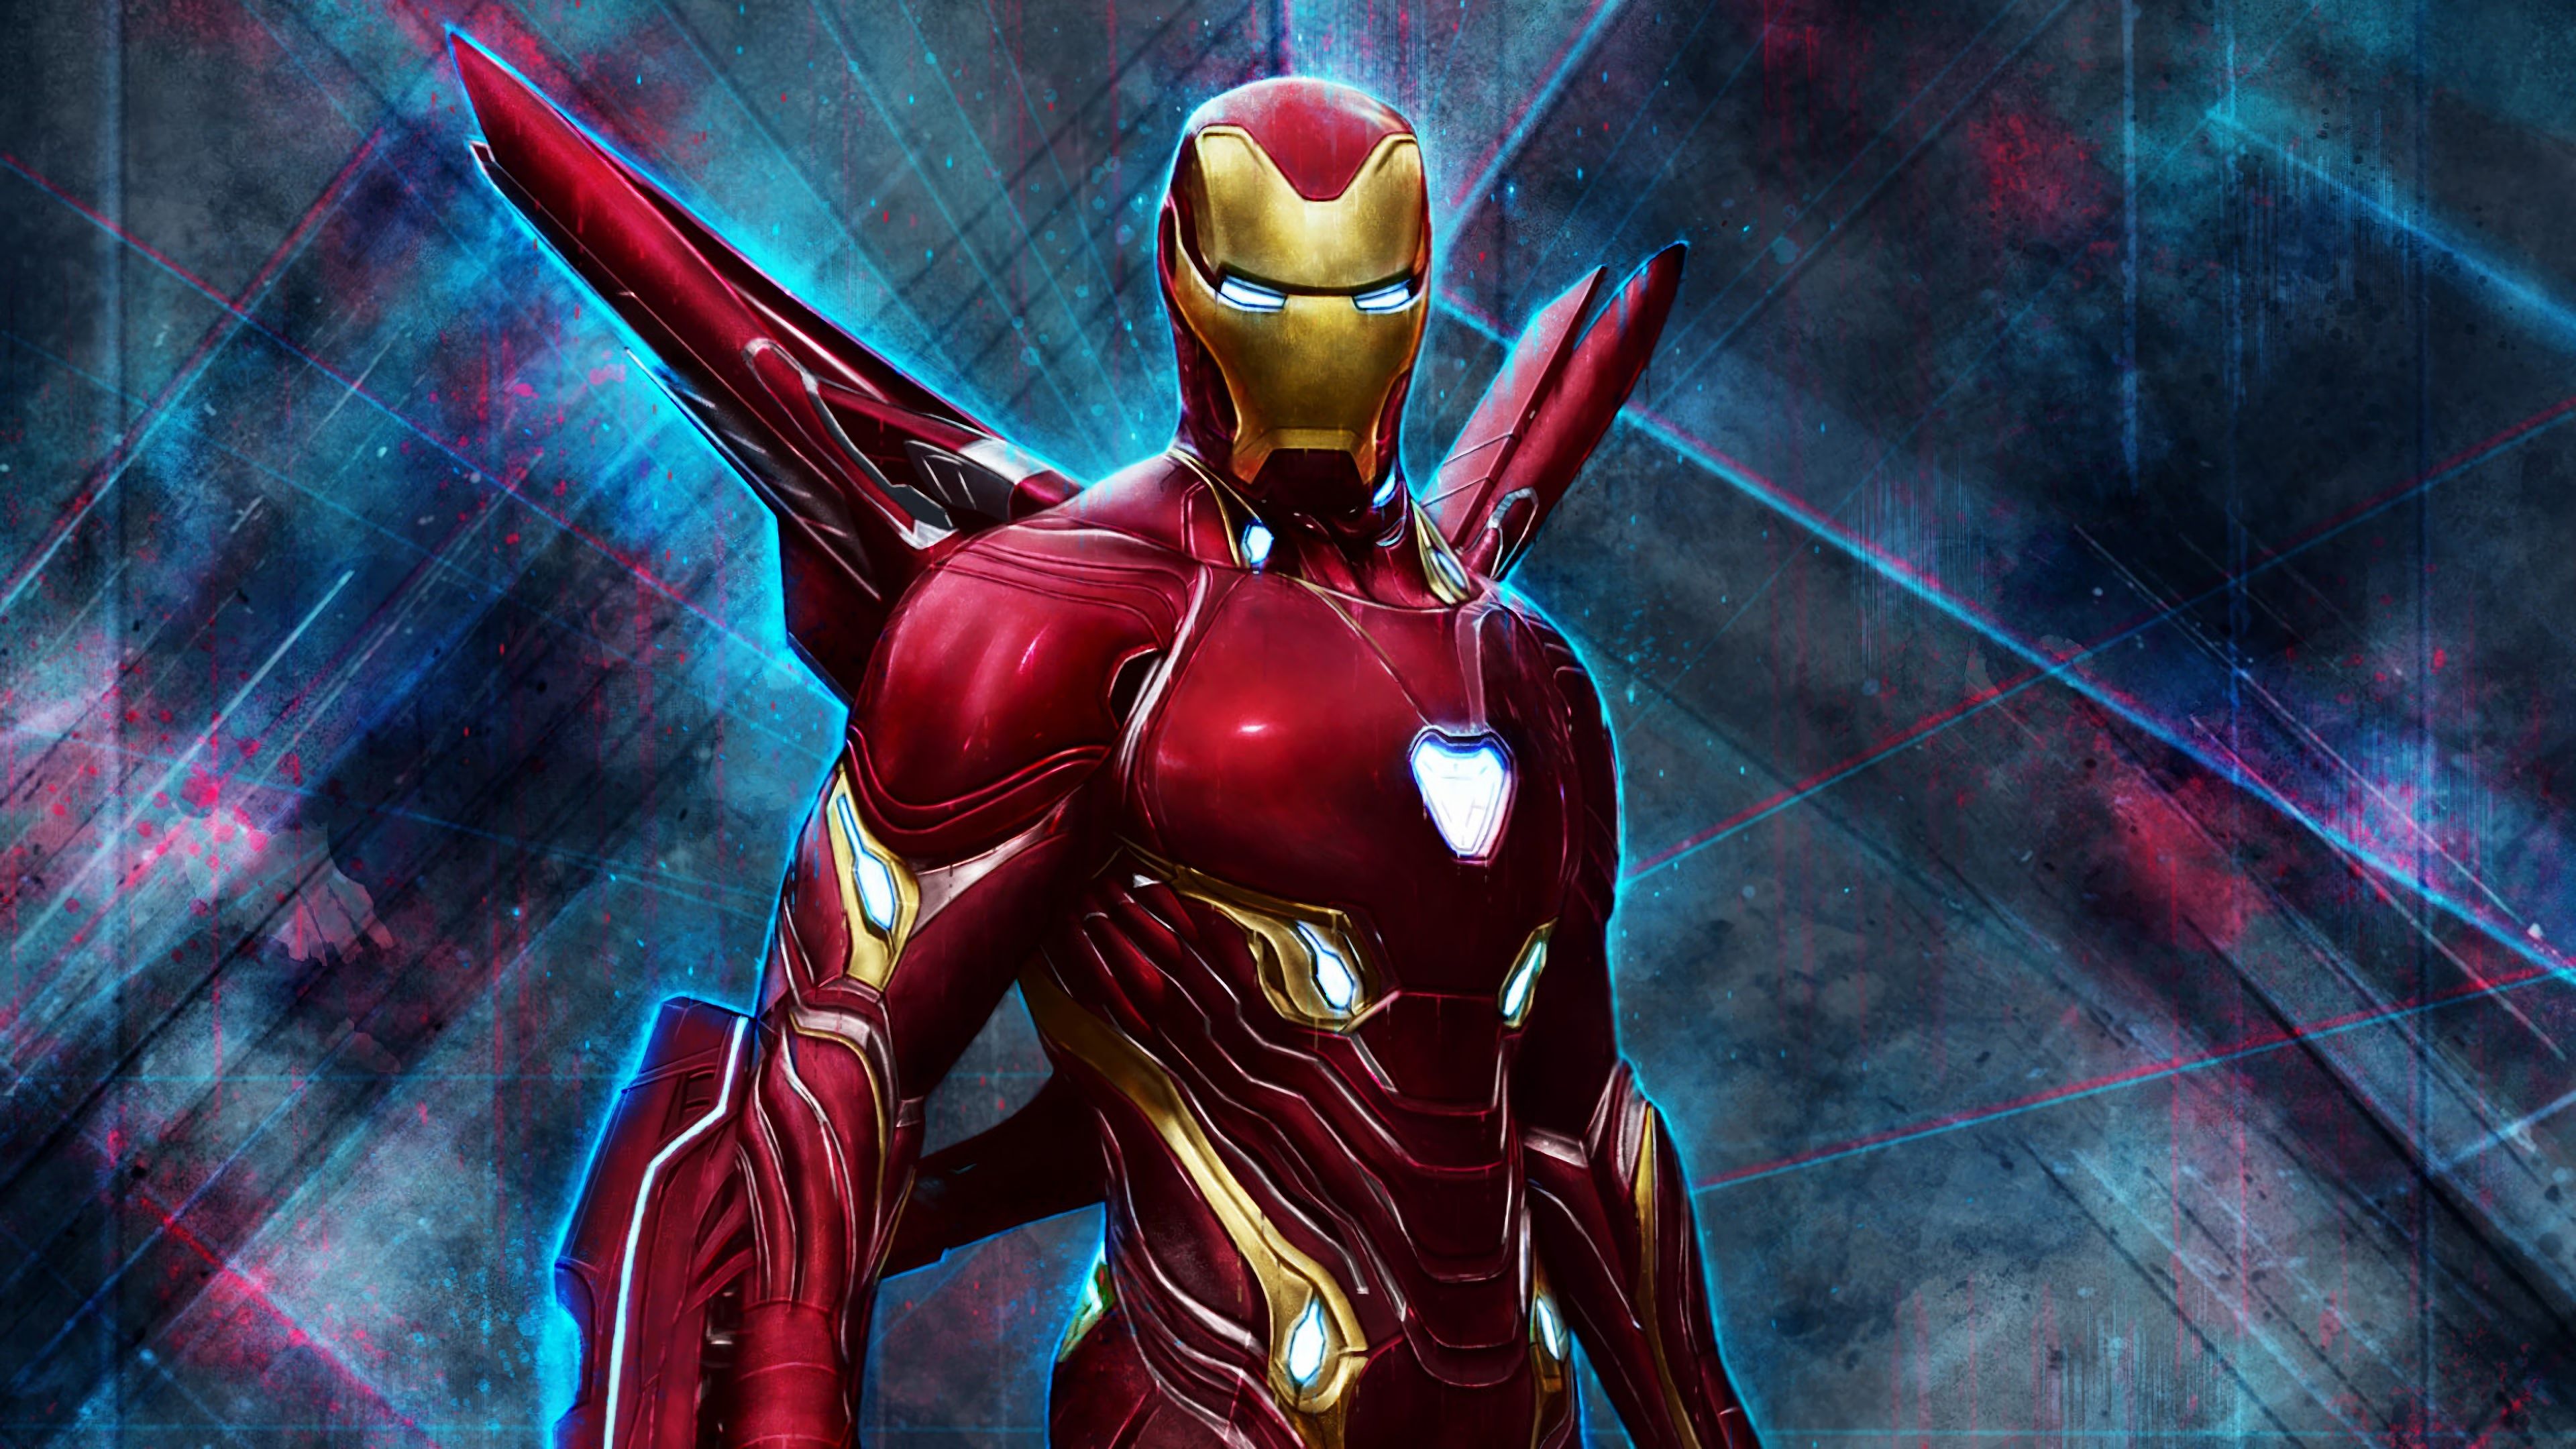 Iron Man Endgame Suit